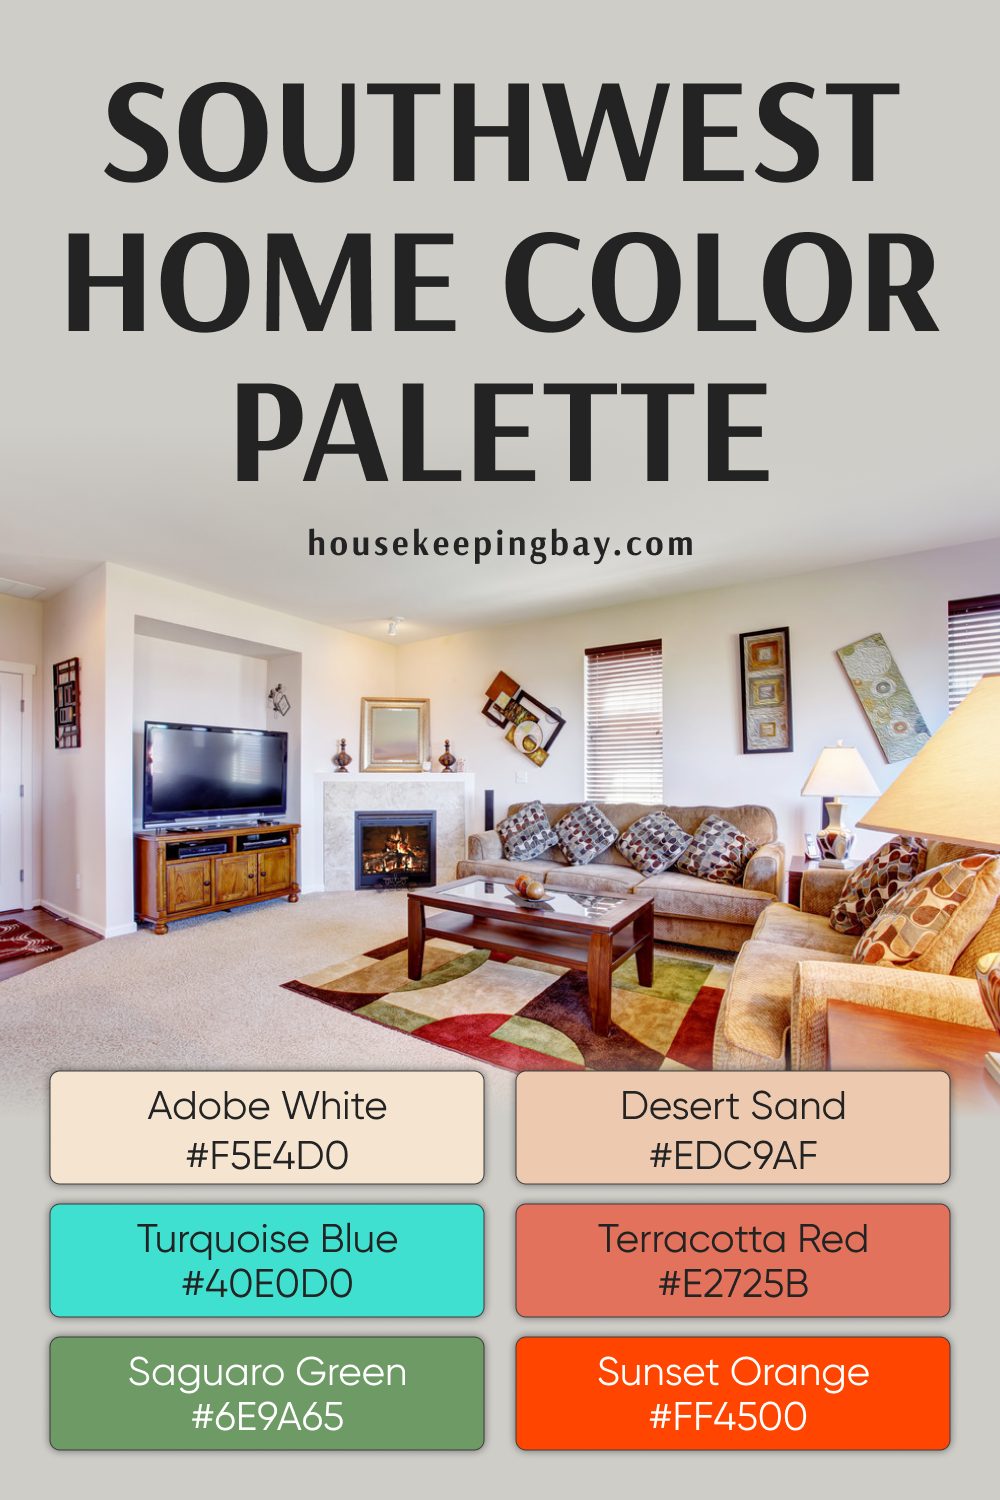 Southwest Home Color Palette